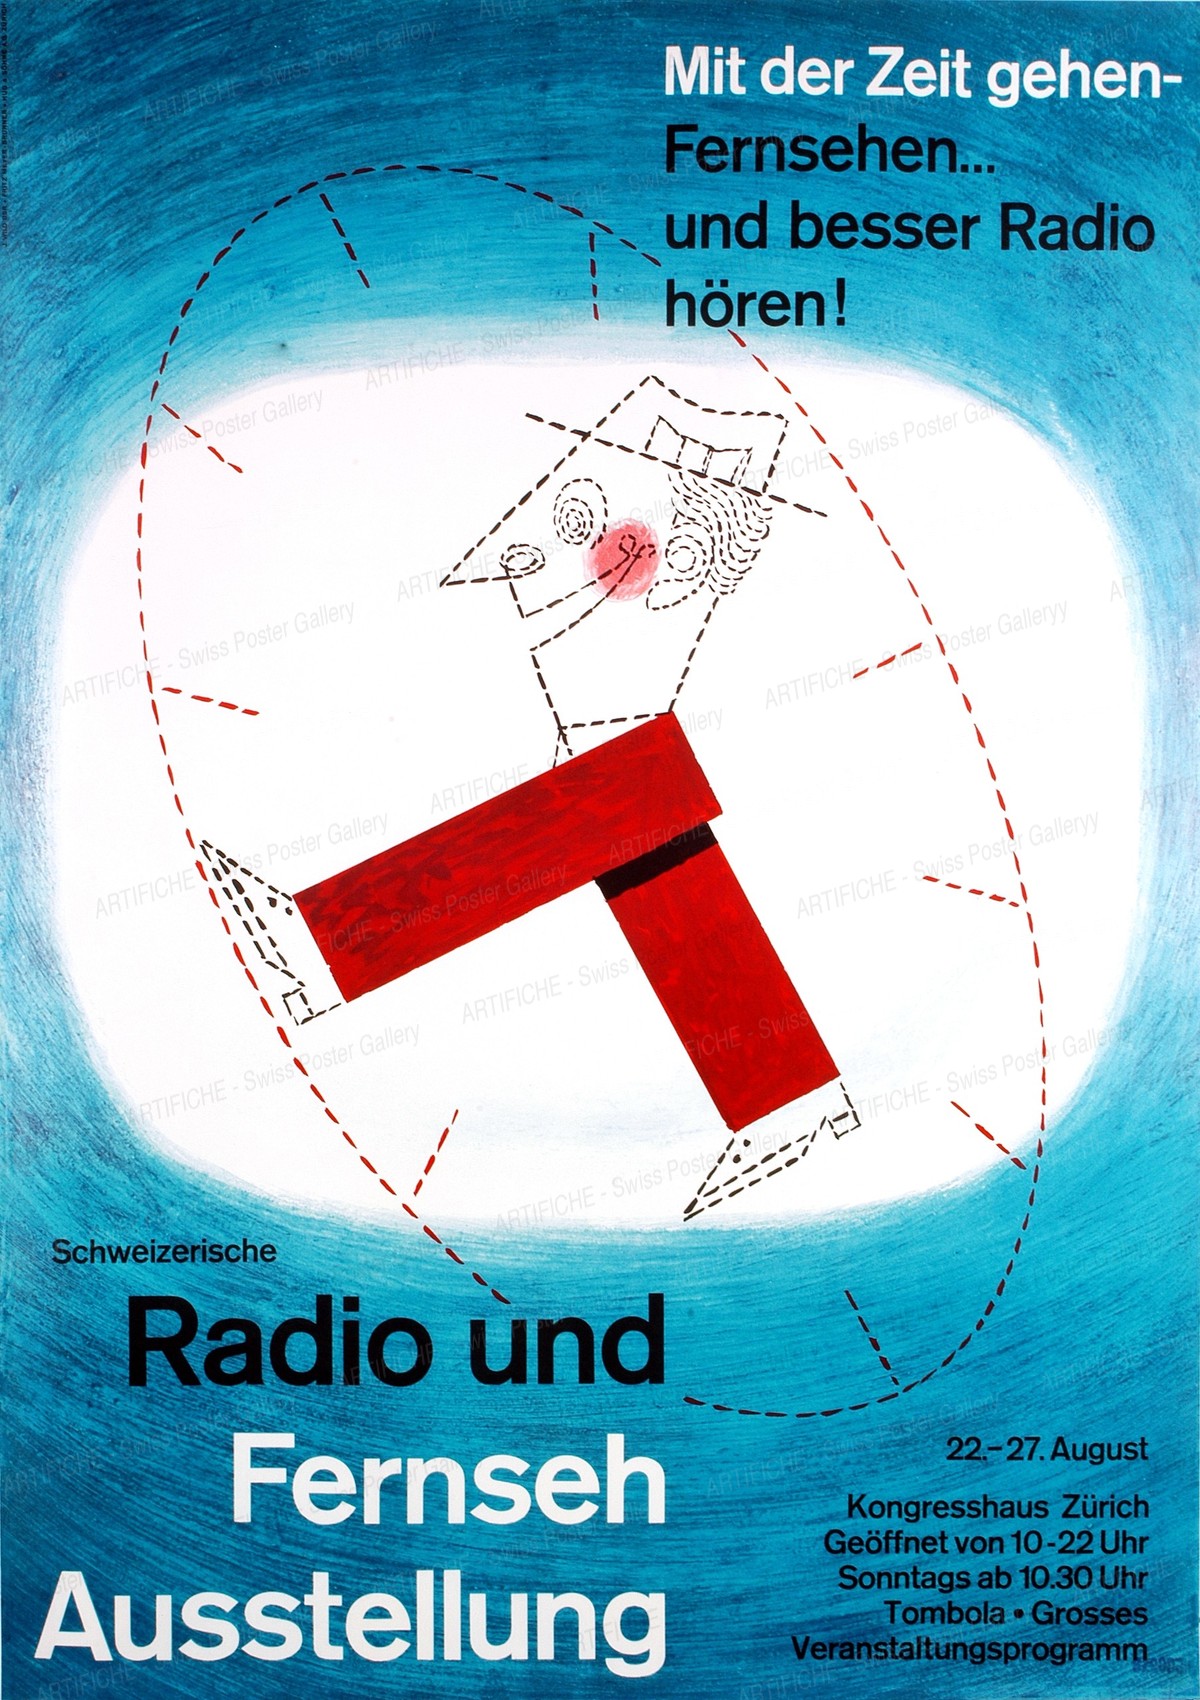 Mit der Zeit gehen – Fernsehen und besser Radio hören -Radio & Fernseh Ausstellung, Fritz Meyer-Brunner